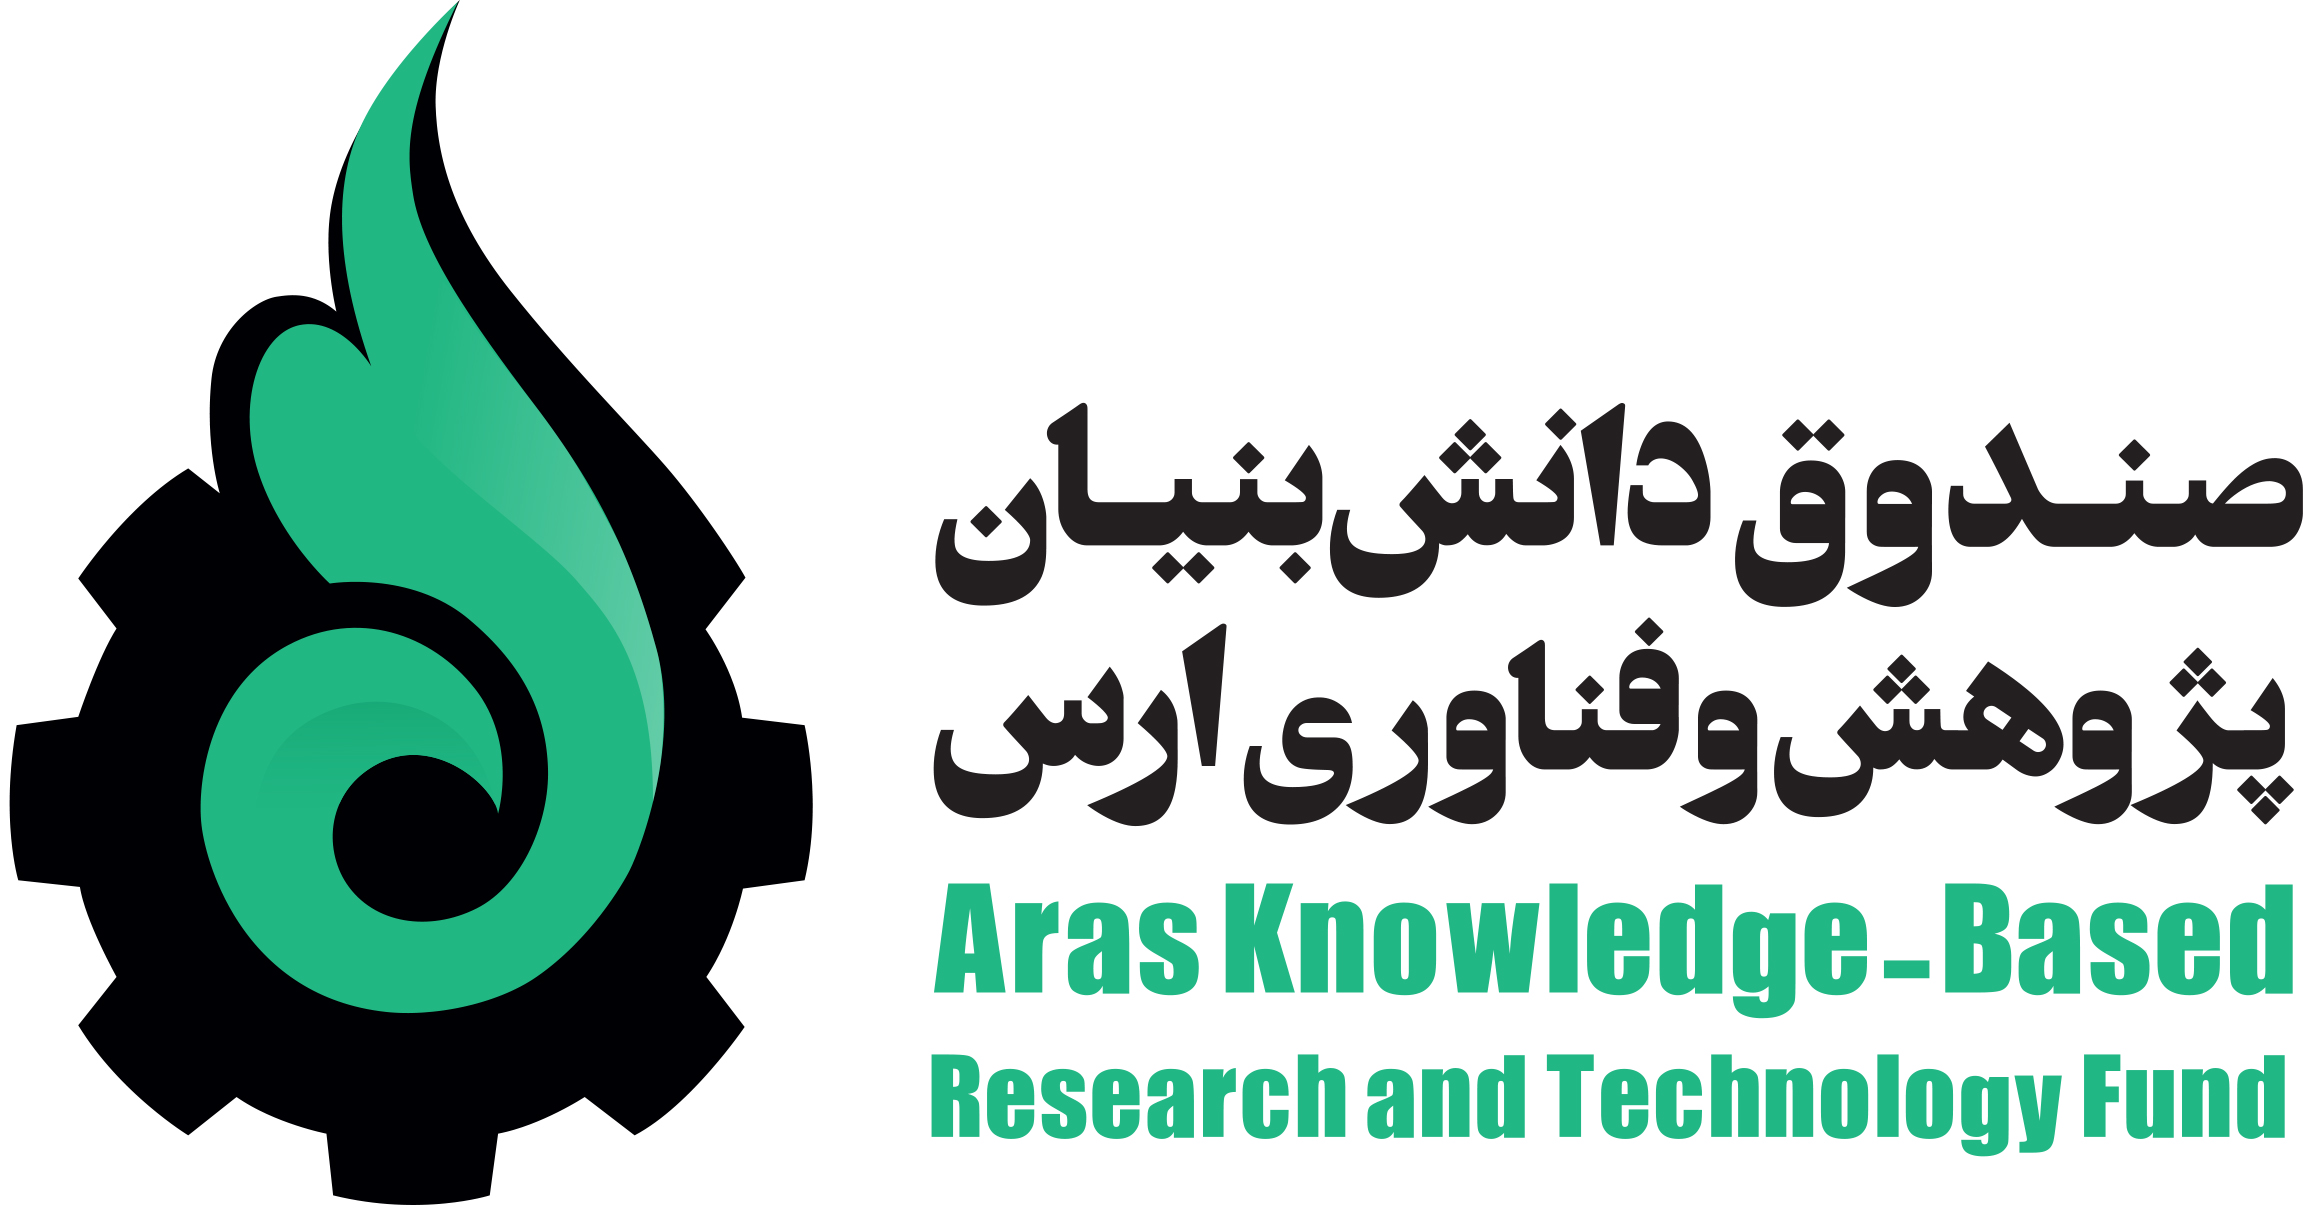 صندوق دانش بنیان پژوهش و فناوری ارس